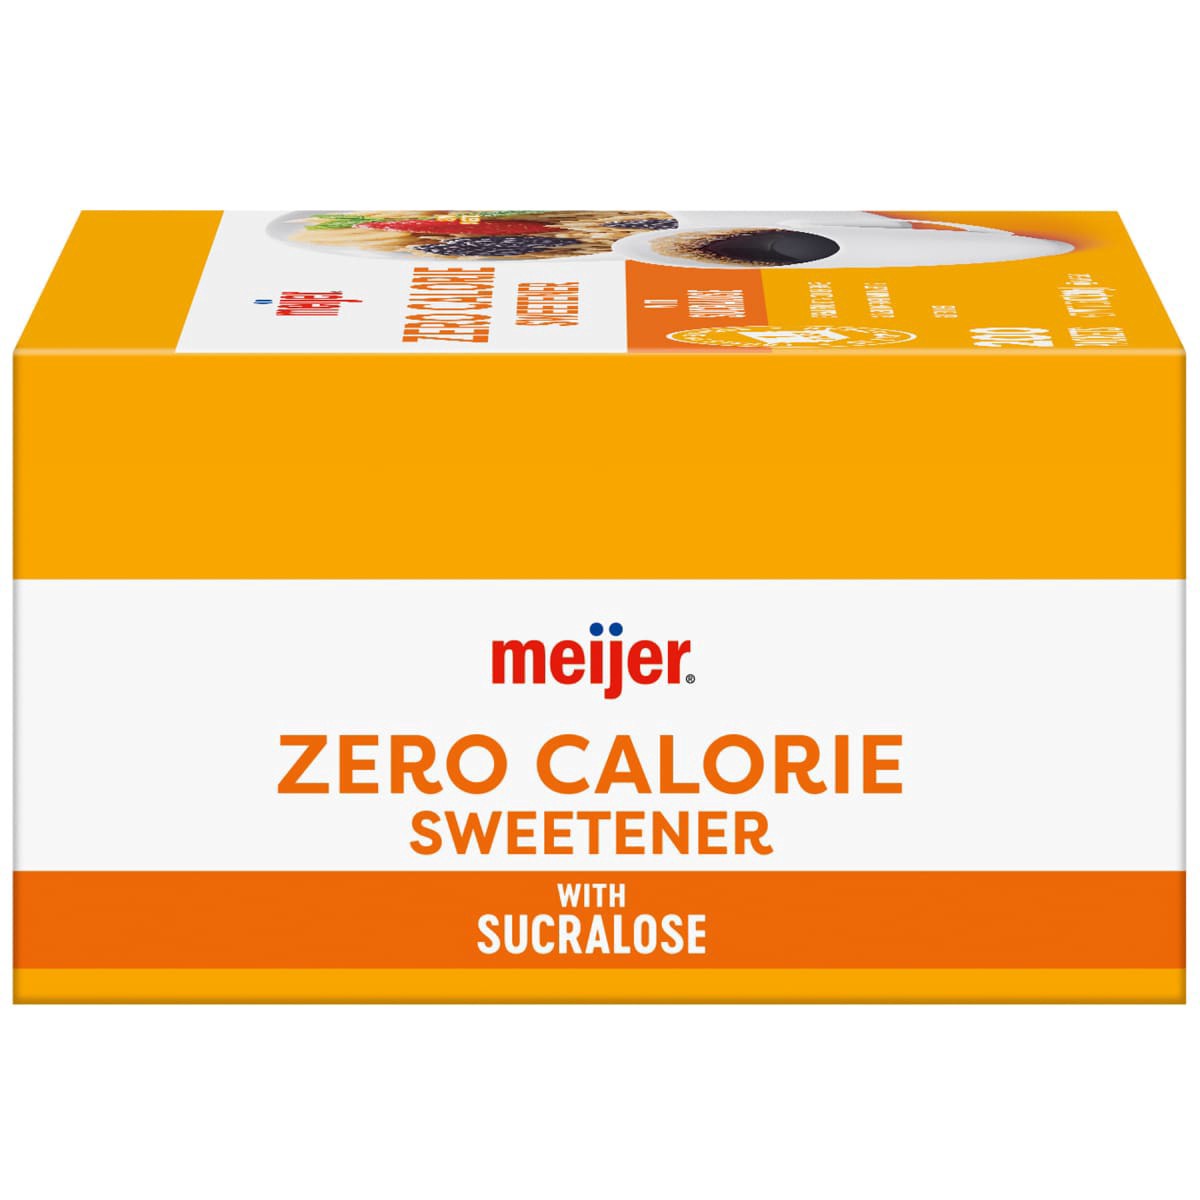 slide 17 of 29, Meijer Zero Calorie Sweetener with Sucralose, 200 ct